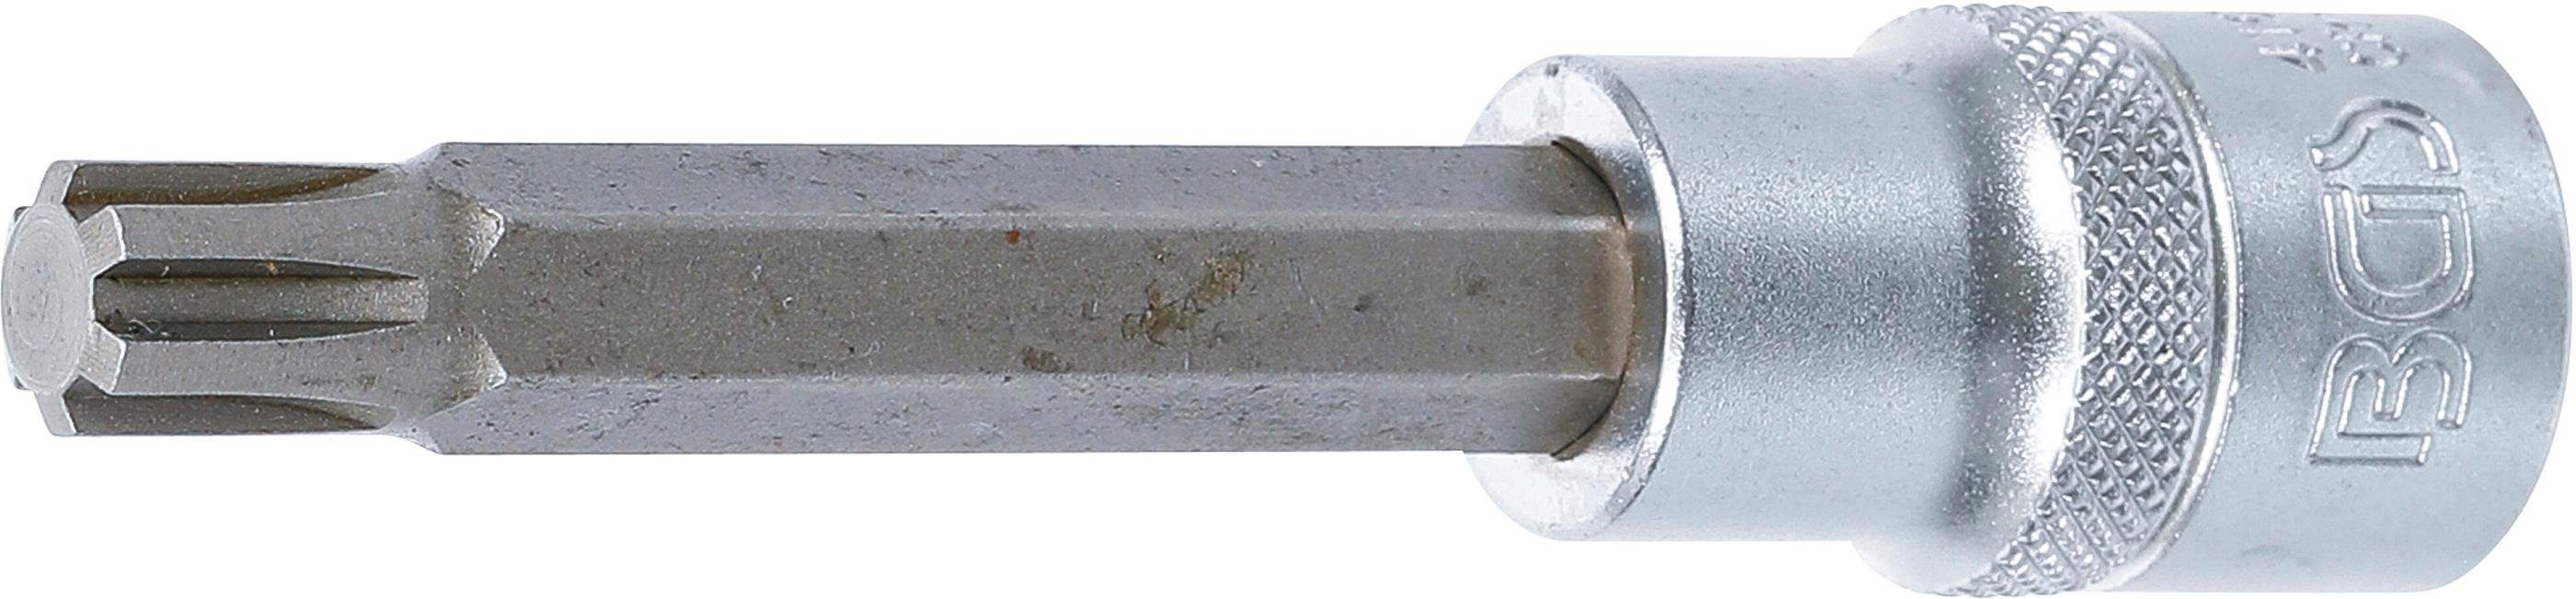 BGS technic Bit-Schraubendreher Bit-Einsatz, Länge 100 mm, Antrieb Innenvierkant 12,5 mm (1/2), Keil-Profil (für RIBE) M10